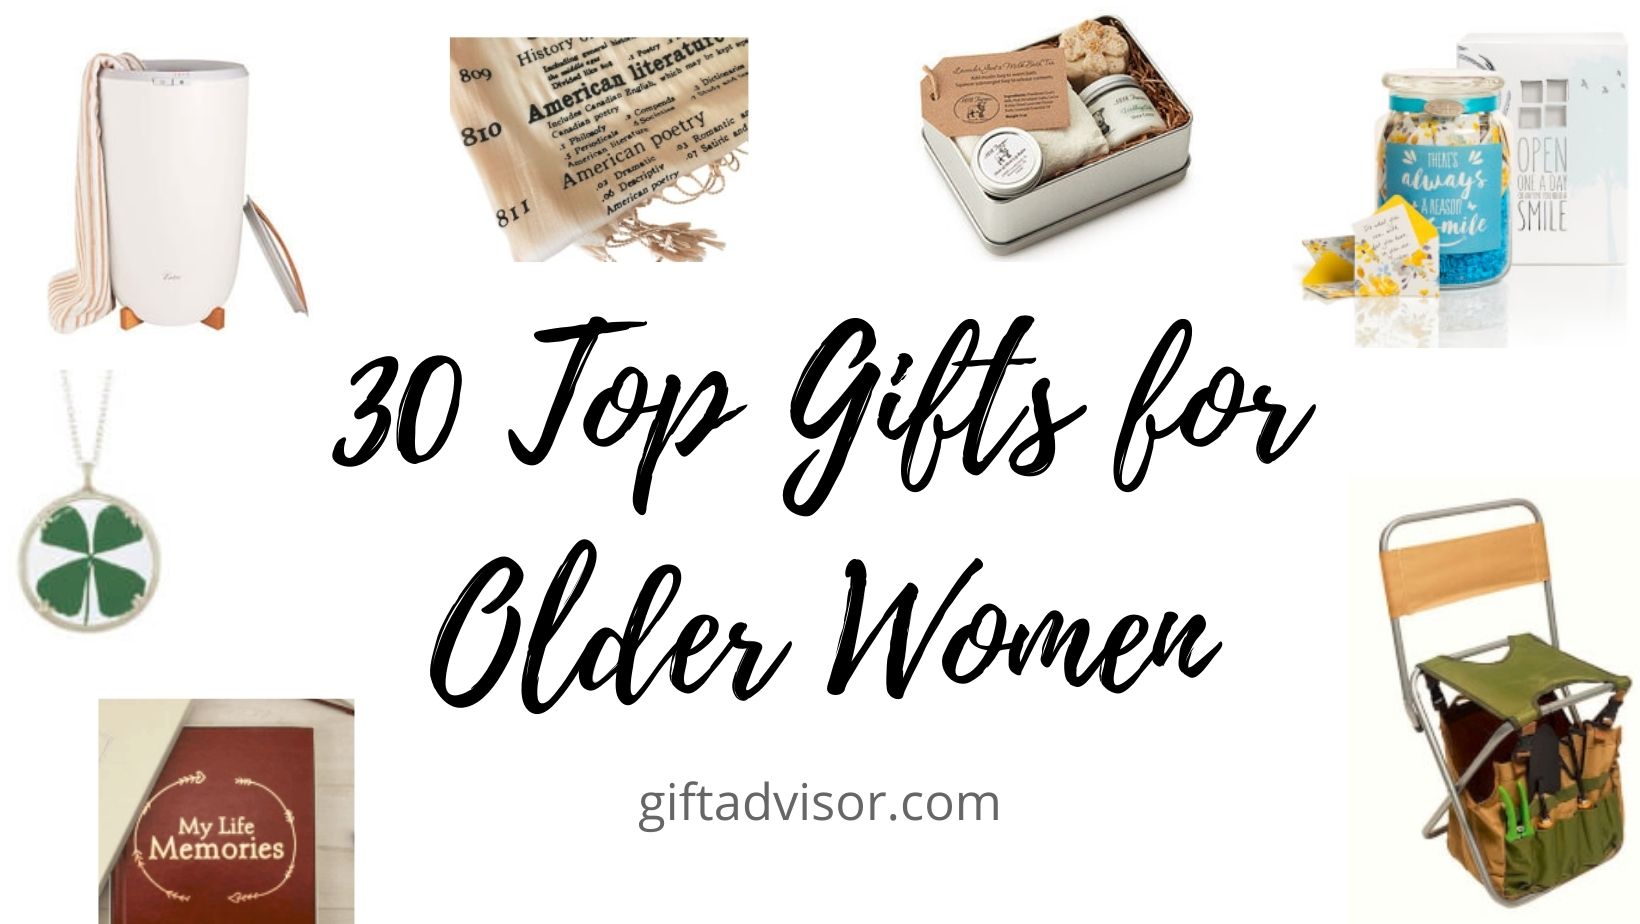 https://giftadvisor.imgix.net/blog-images/30-top-gifts-for-older-women.jpg